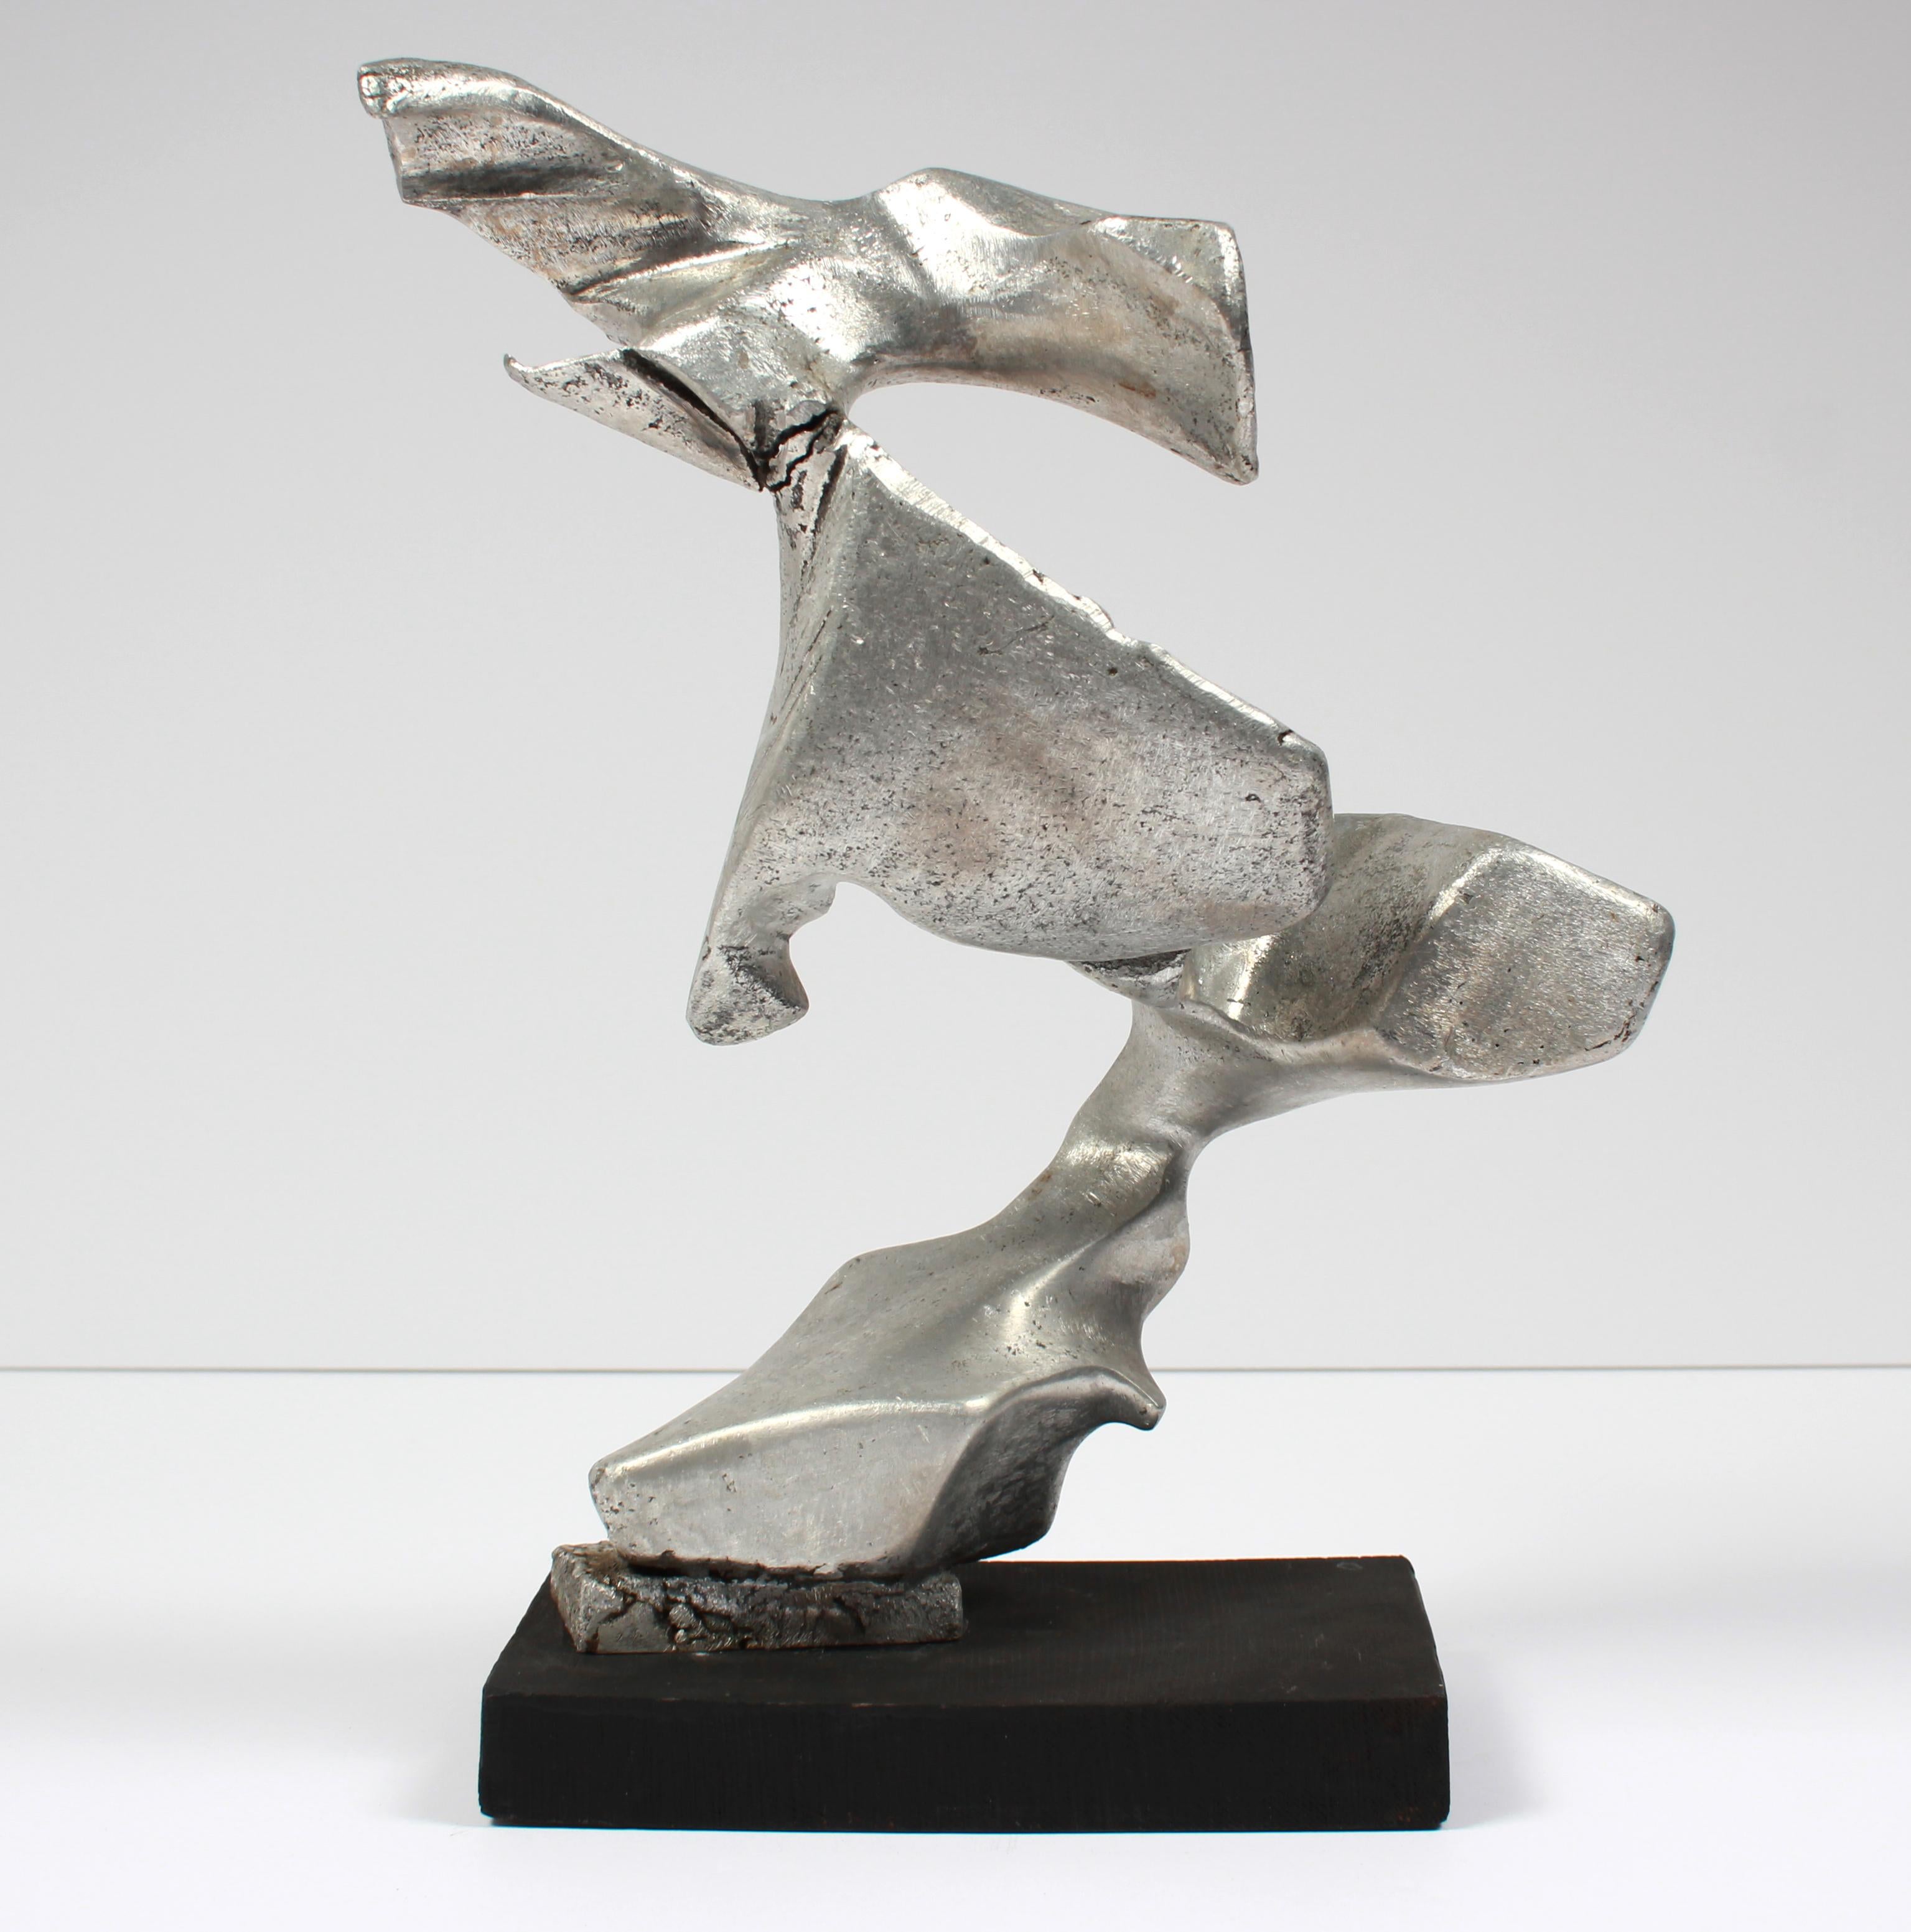 Diese amorphe Skulptur aus dem späten 20. Jahrhundert, hergestellt mit Bildhauermedium und Metallfarbe auf einem Holzsockel, ist unsigniert.  Von einem Sammler erworben und Teil eines größeren skulpturalen Werks.